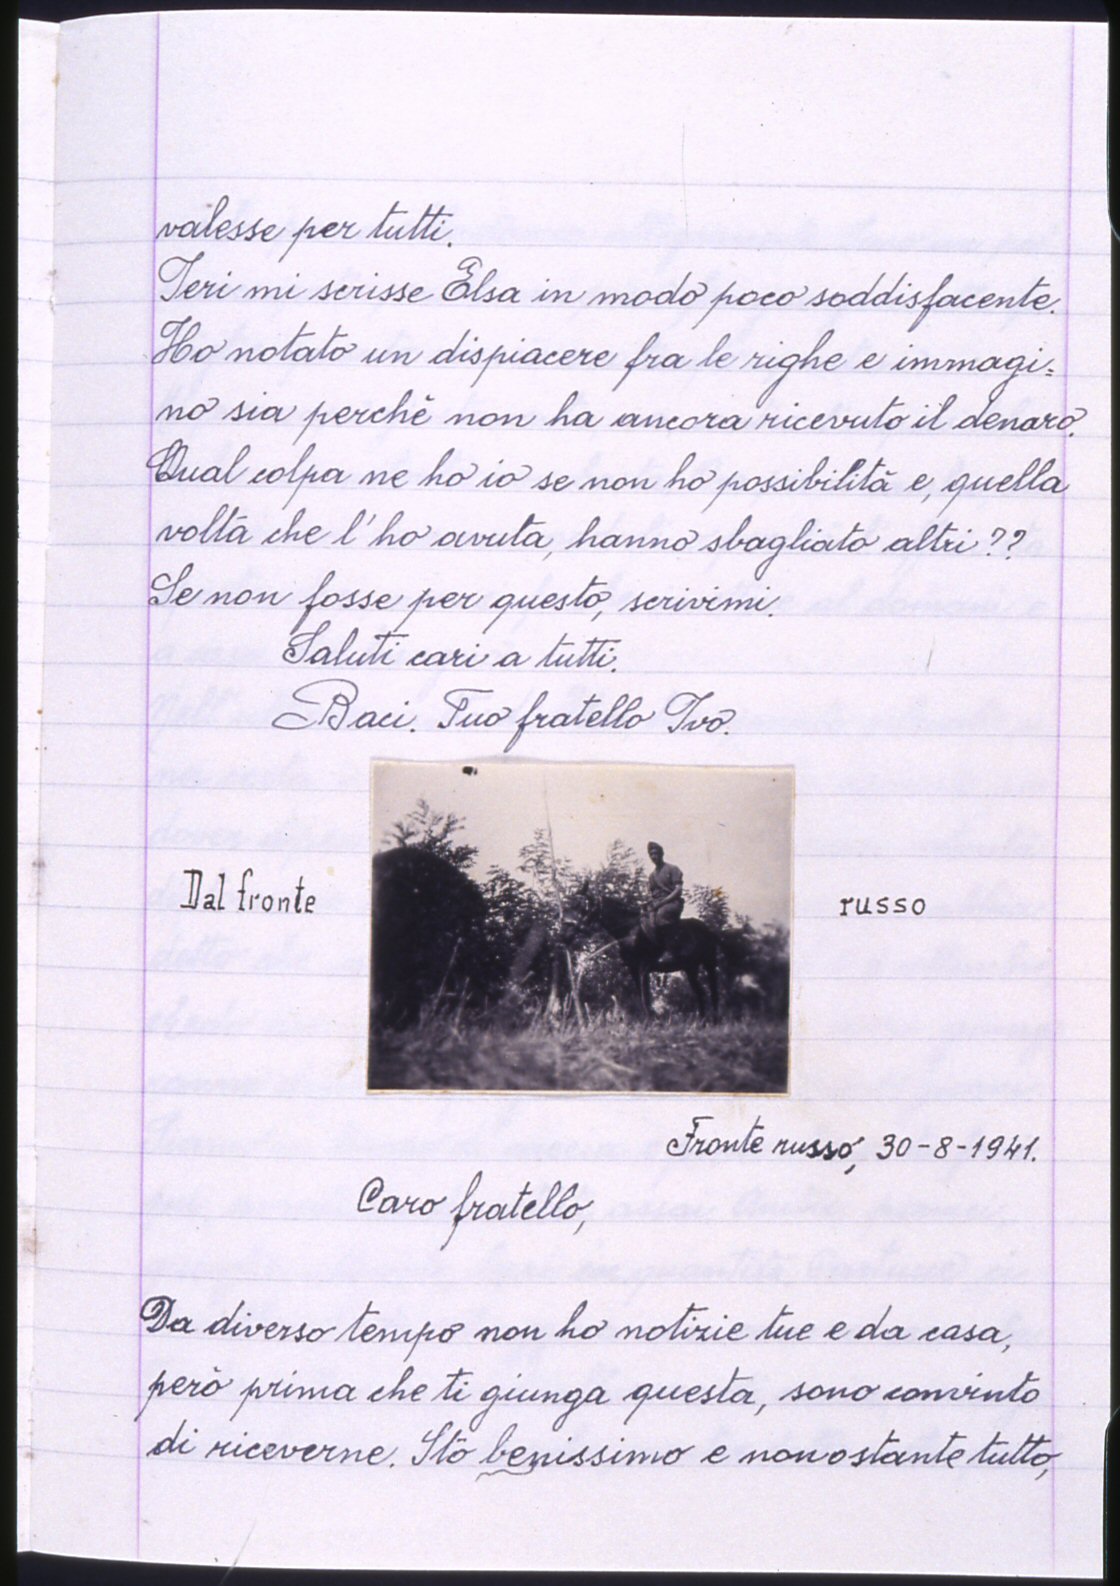 1941, fronte russo - lettera e fotografia